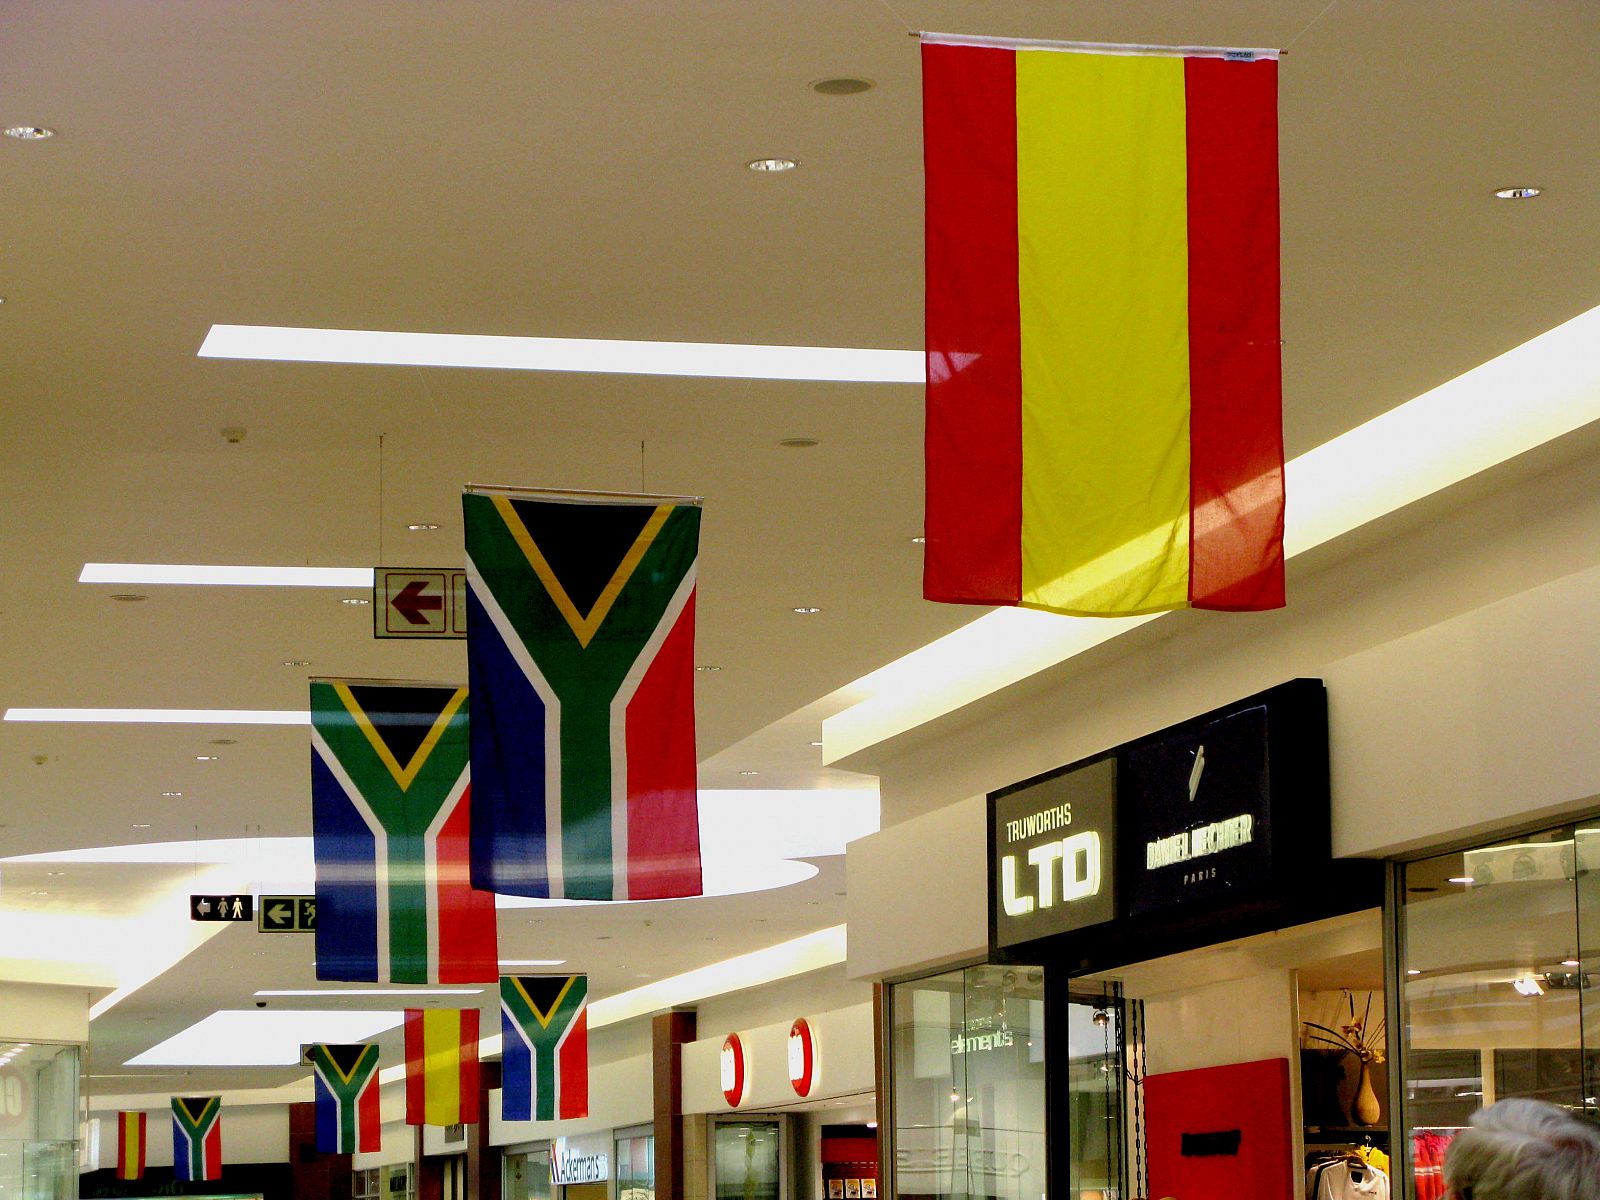 Banderas de España y Sudáfrica se alternan en el techo del centro comercial.